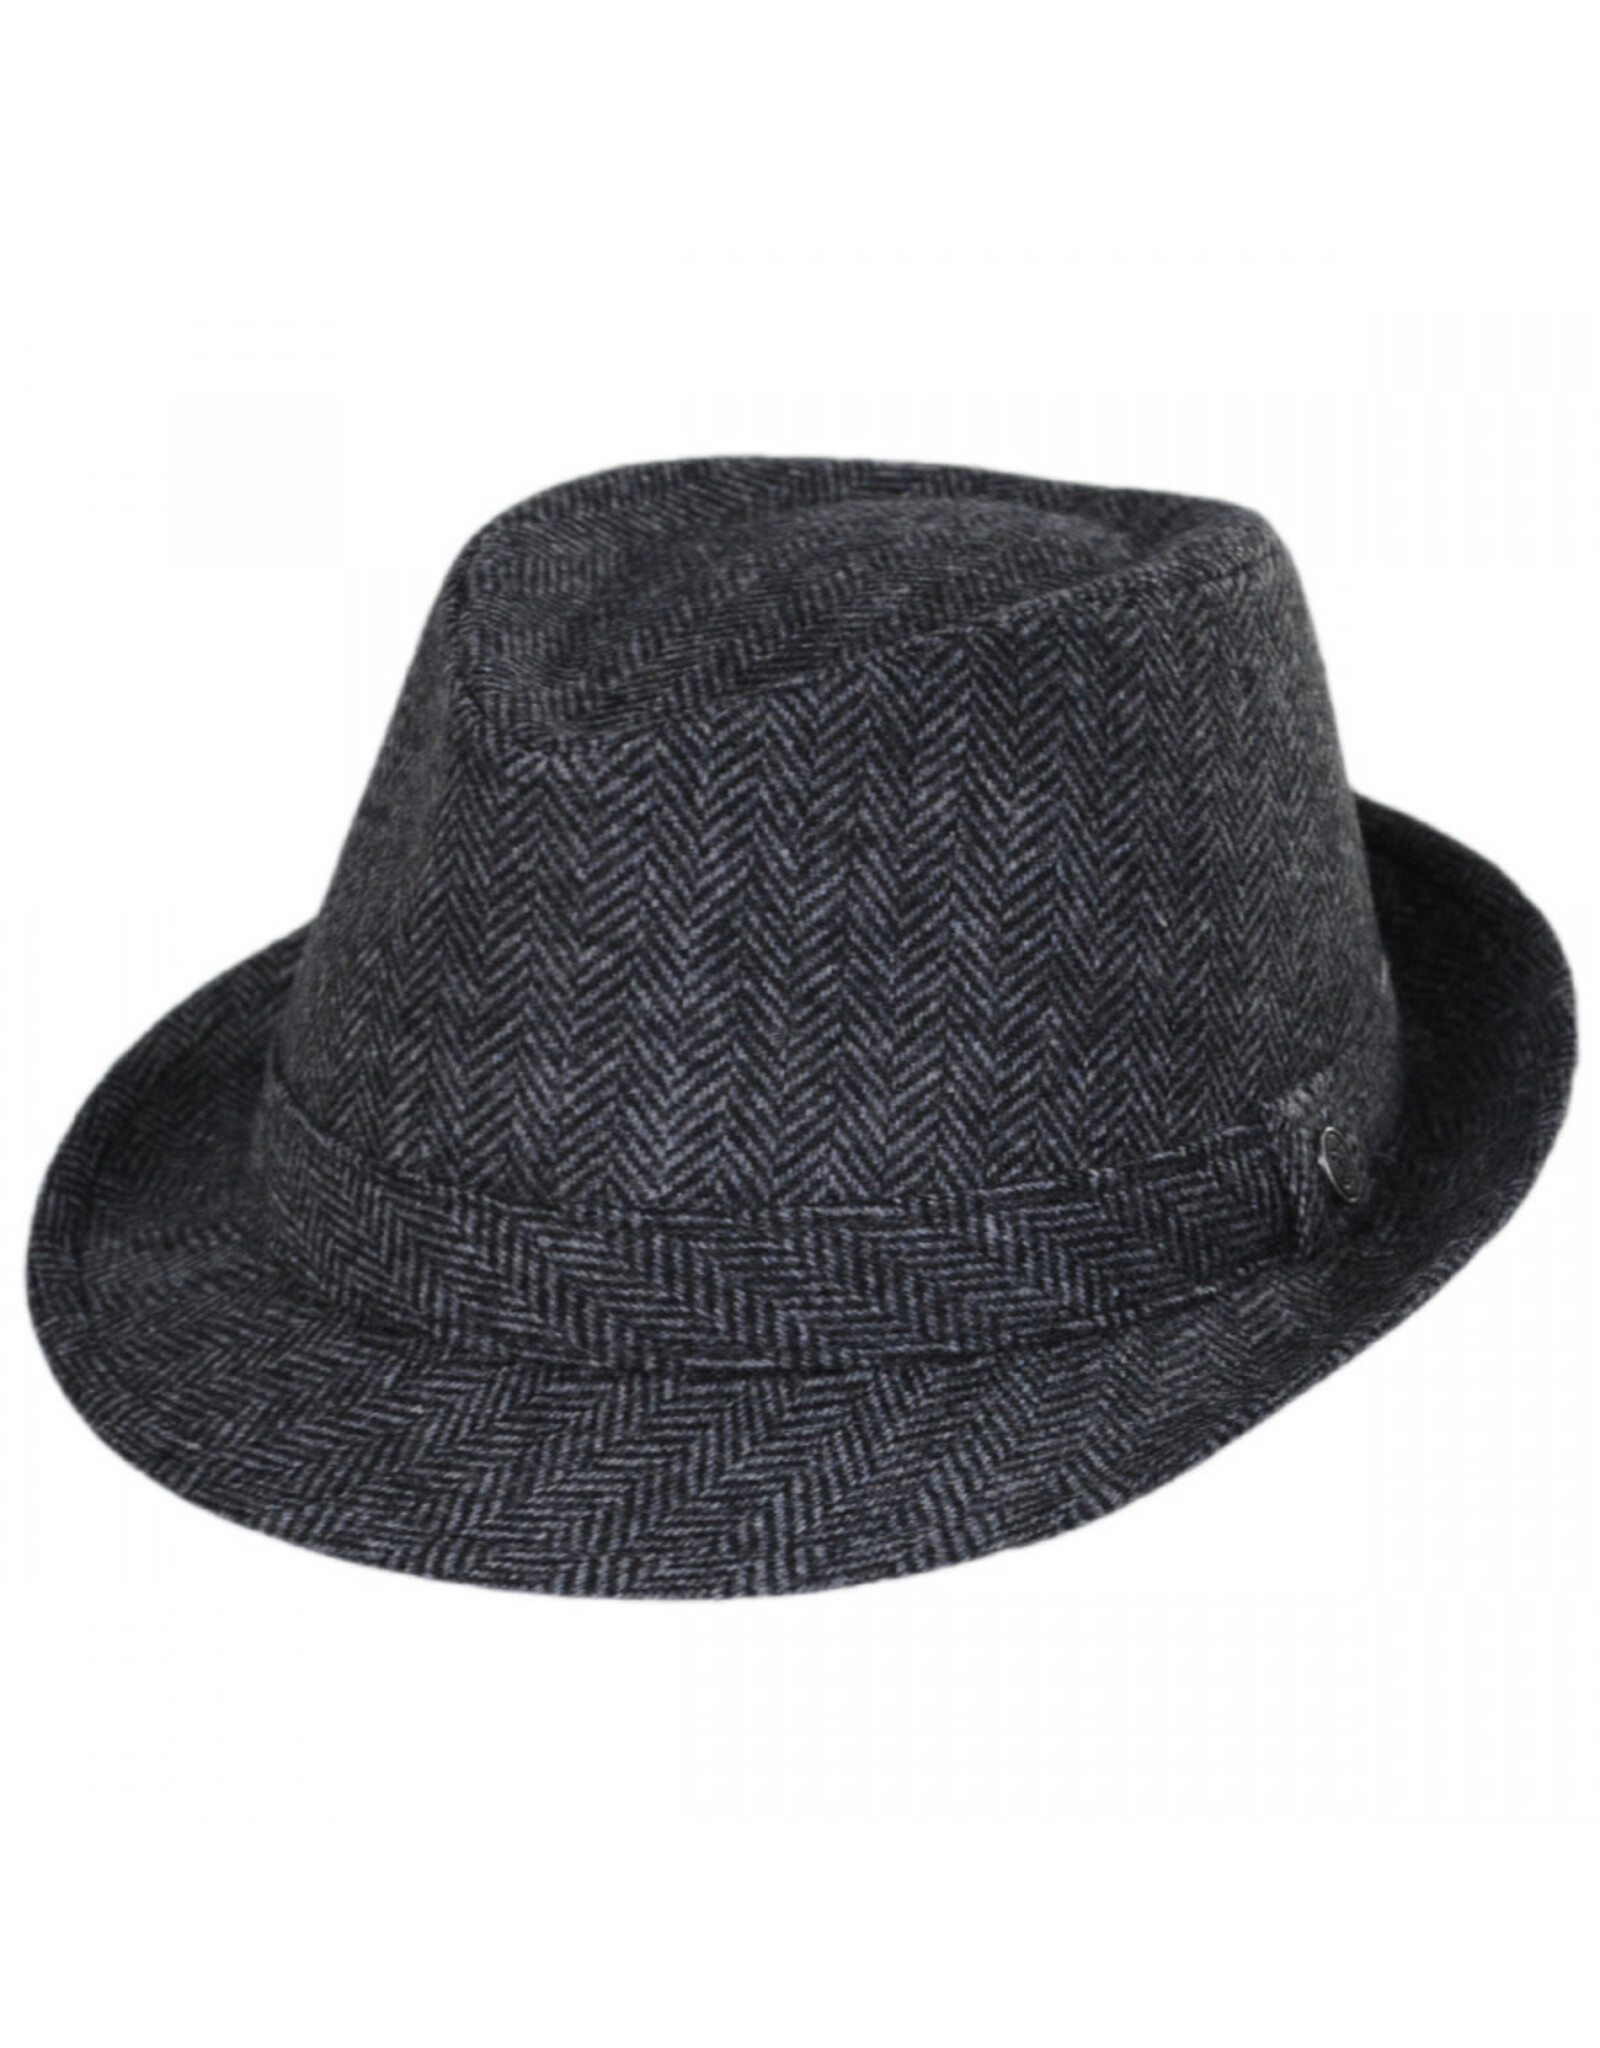 Jaxon Hats, Inc. Sm Herringbone Wool Trilby Fedora Hat